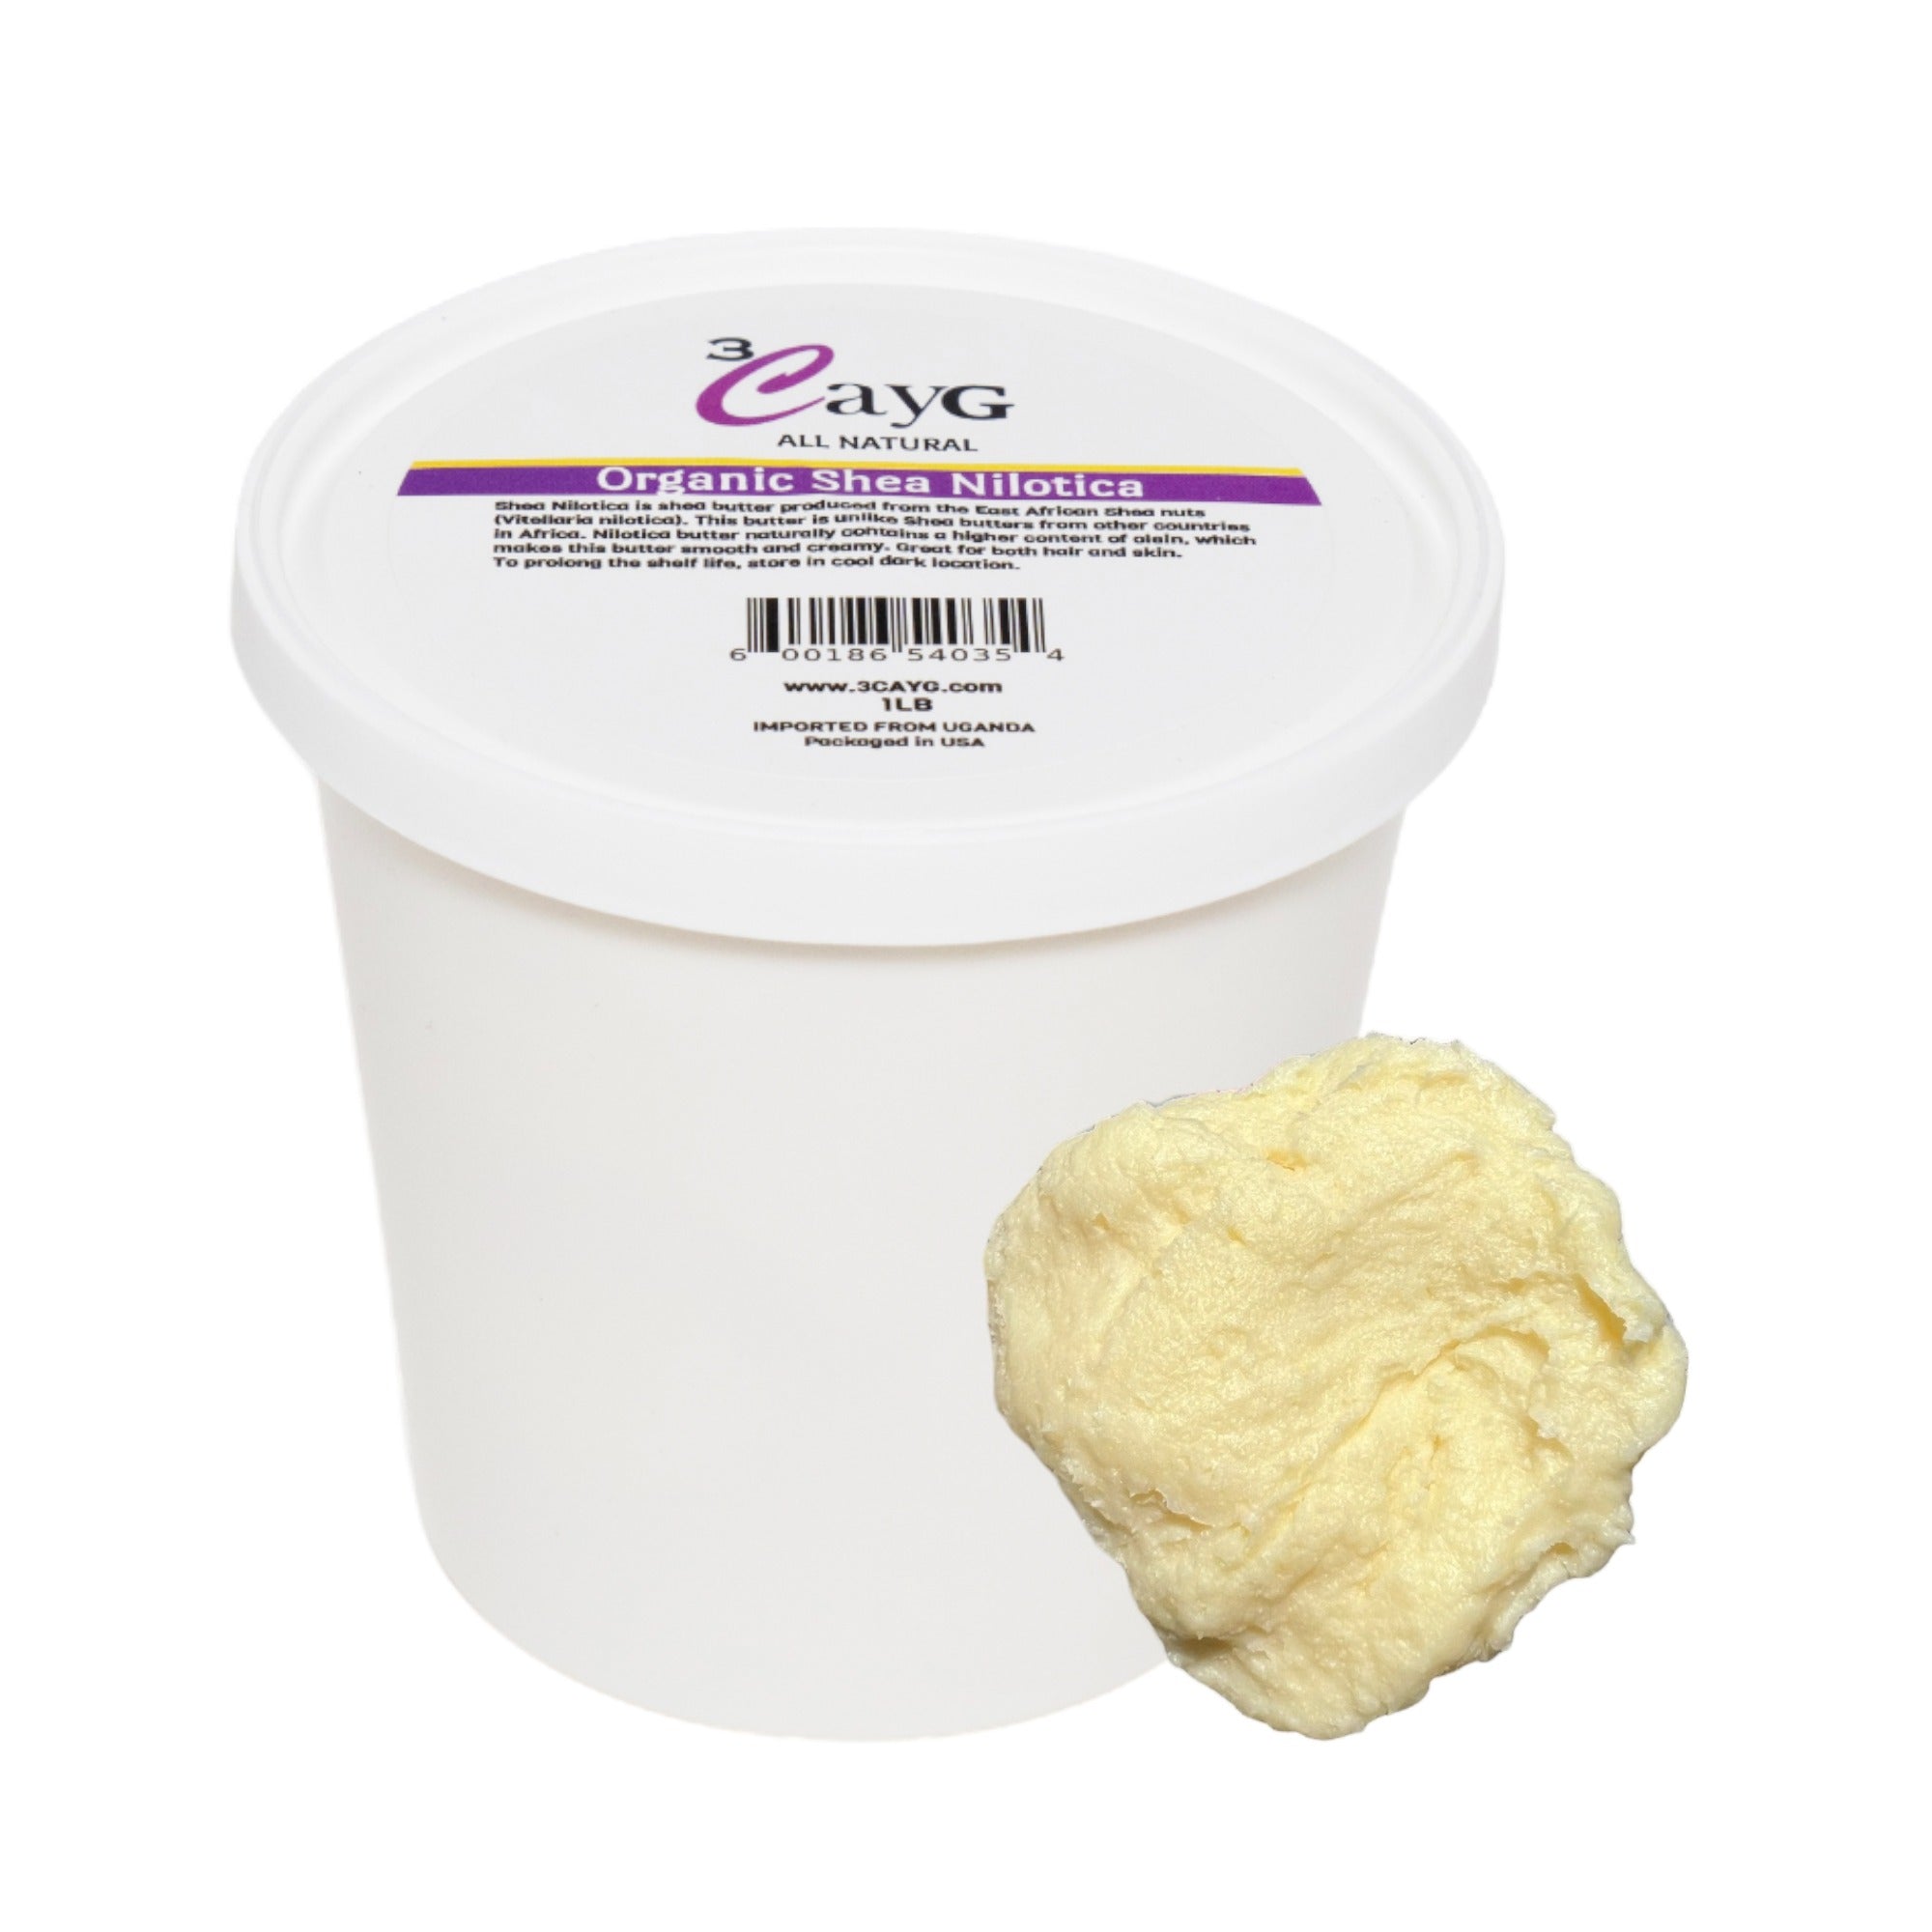 Murumuru Butter, Kokum Butter, Natural Skin Care